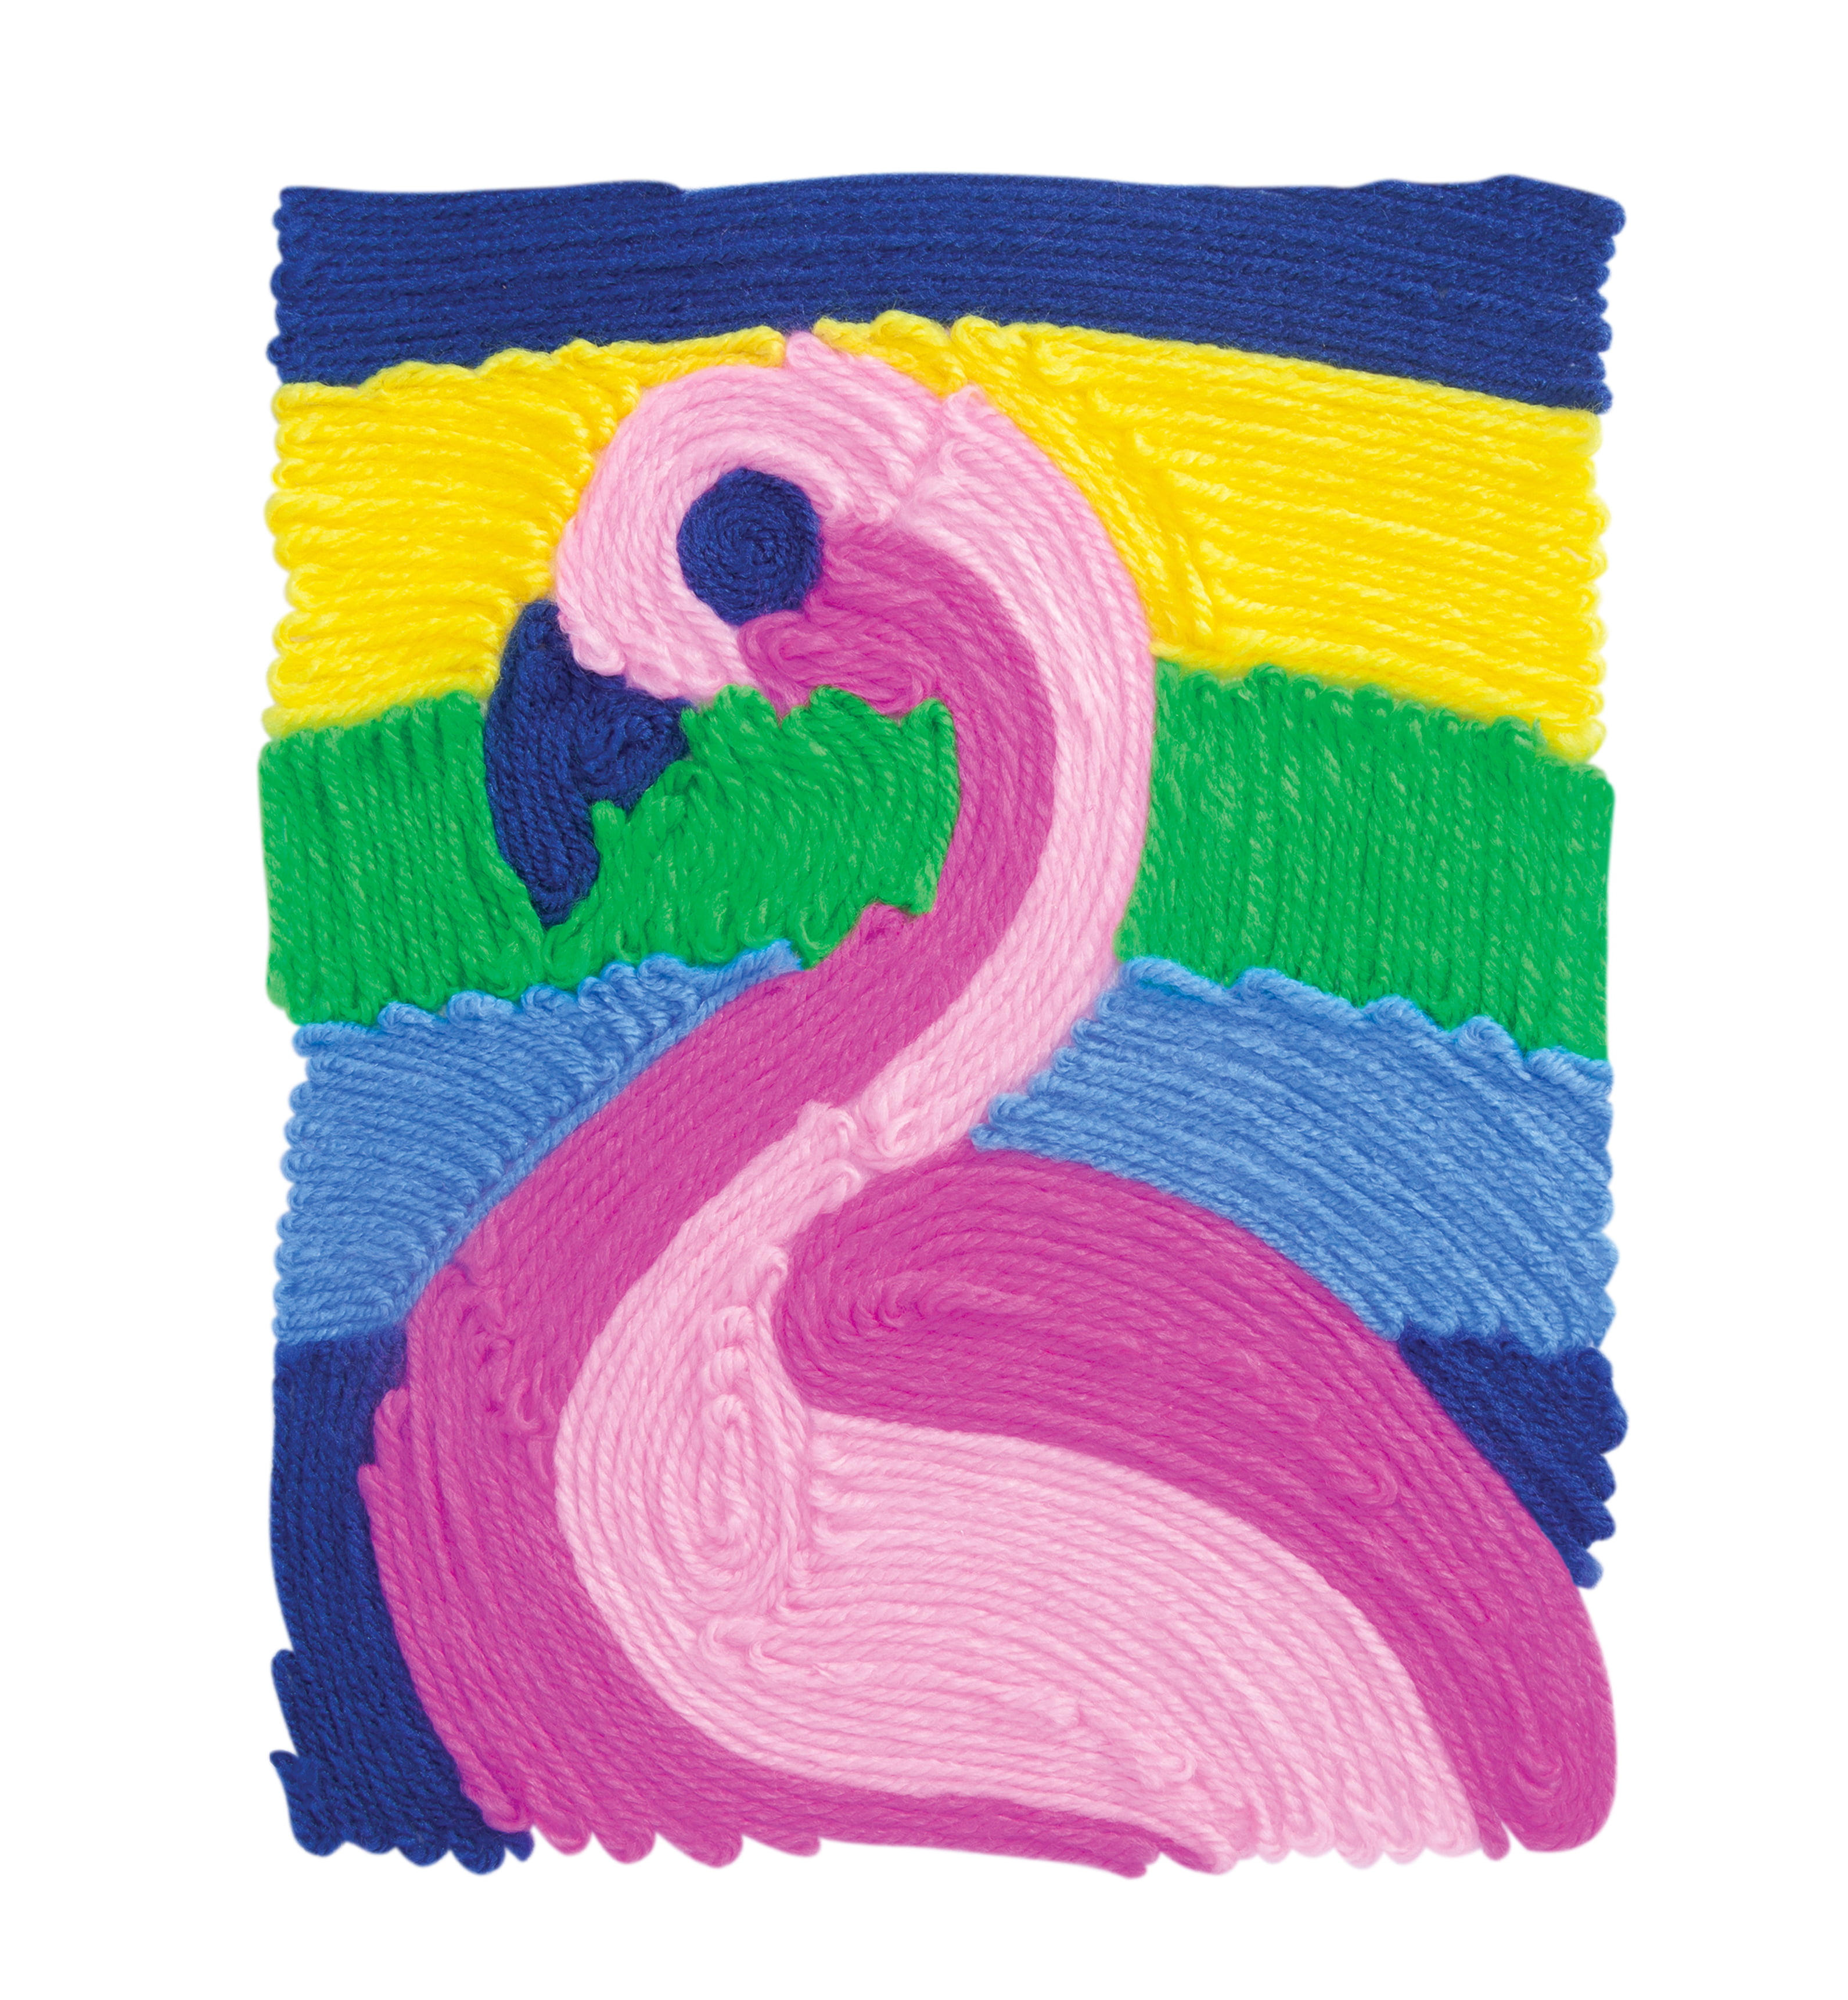 Girls Coloring Kit Flamingo Crayon Roll Toddler Art Set 